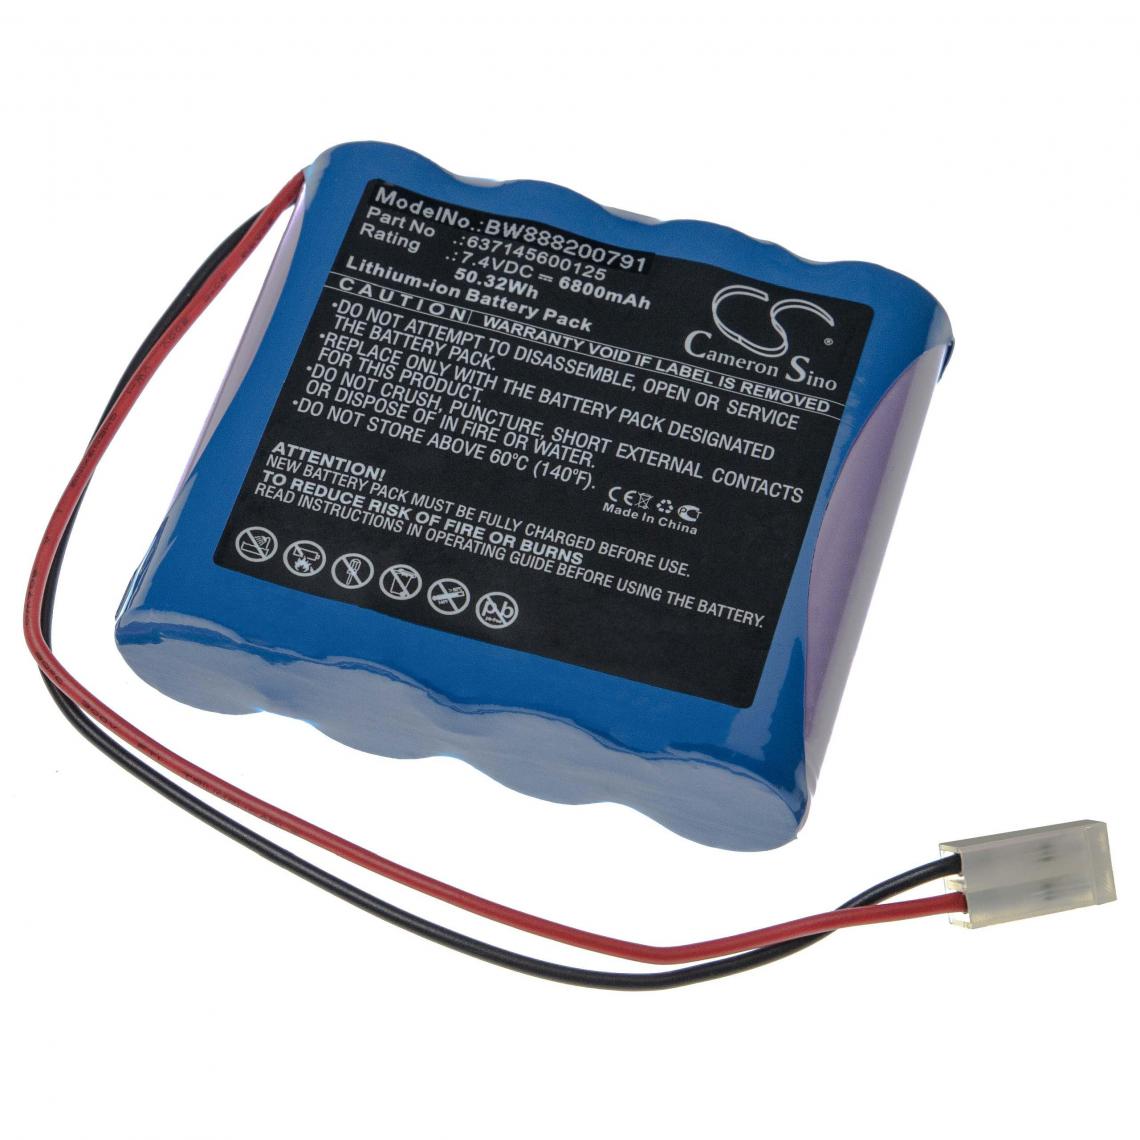 Vhbw - vhbw batterie compatible avec Atmos Emergency Suction appareil de médecine comme pompe aspirante de mucosité (6800mAh, 7.4V, Li-Ion) - Piles spécifiques